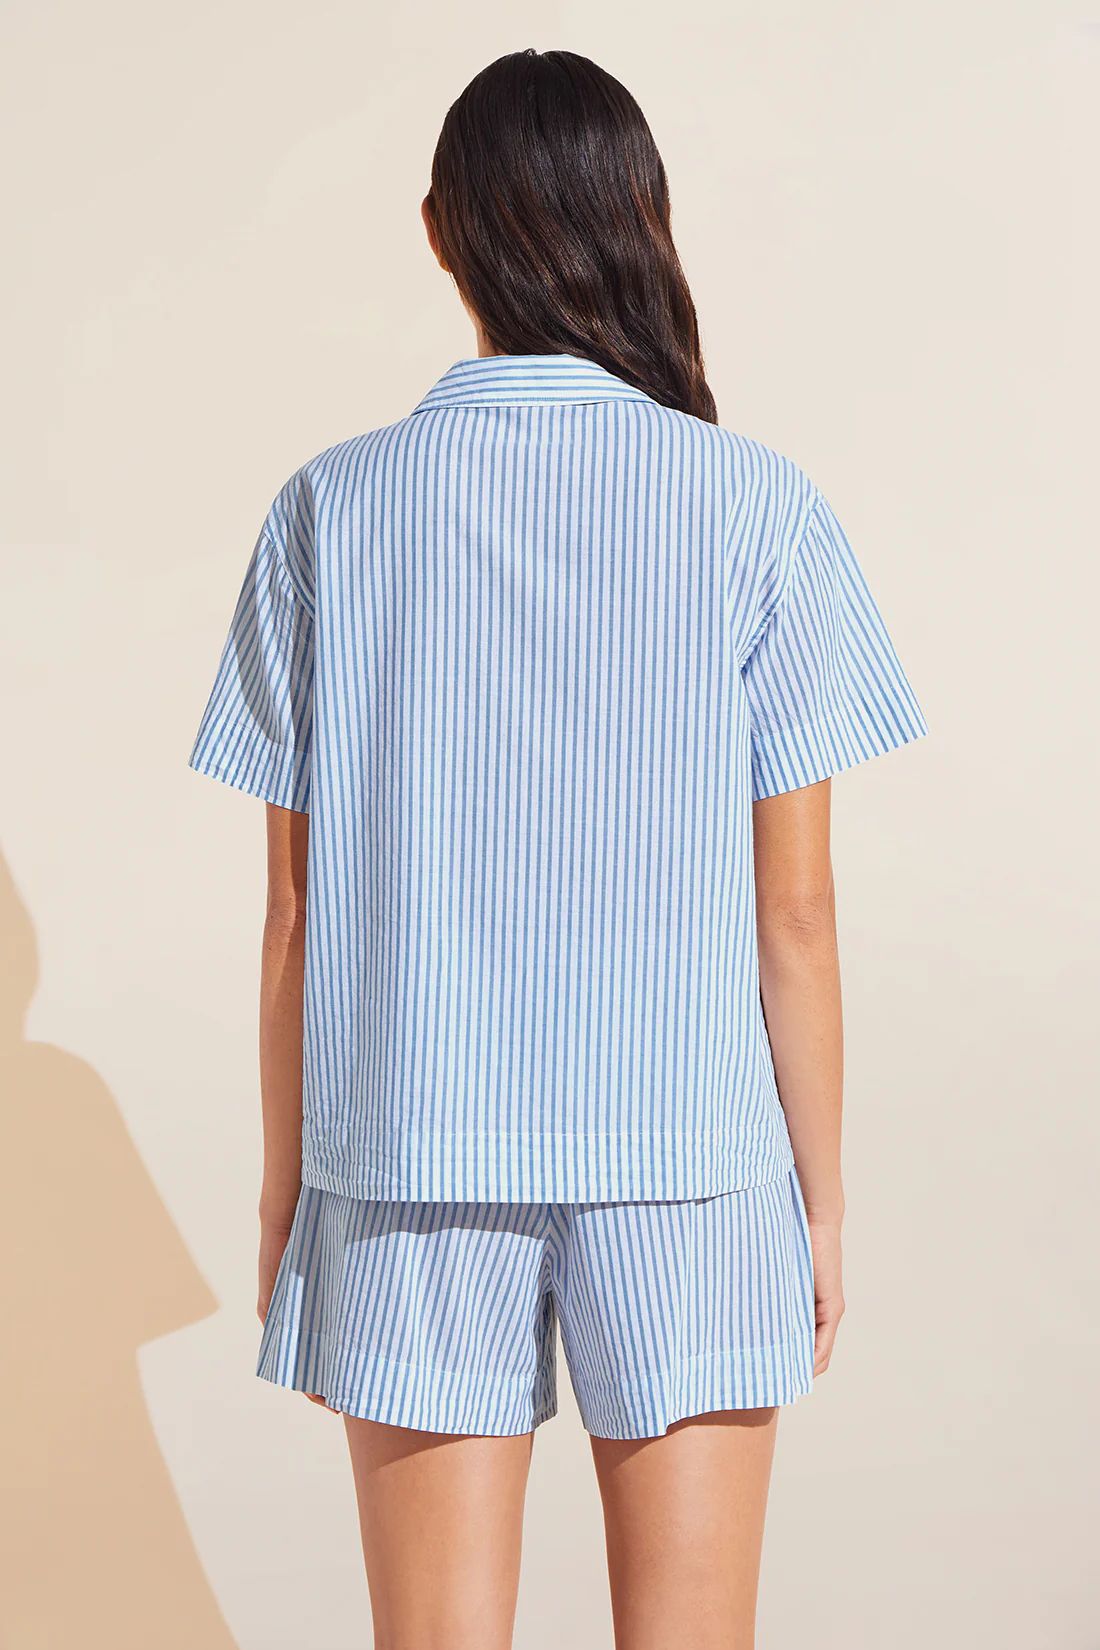 Organic Sandwashed Cotton Printed Short PJ Set - Nautico Stripe Azure | Eberjey